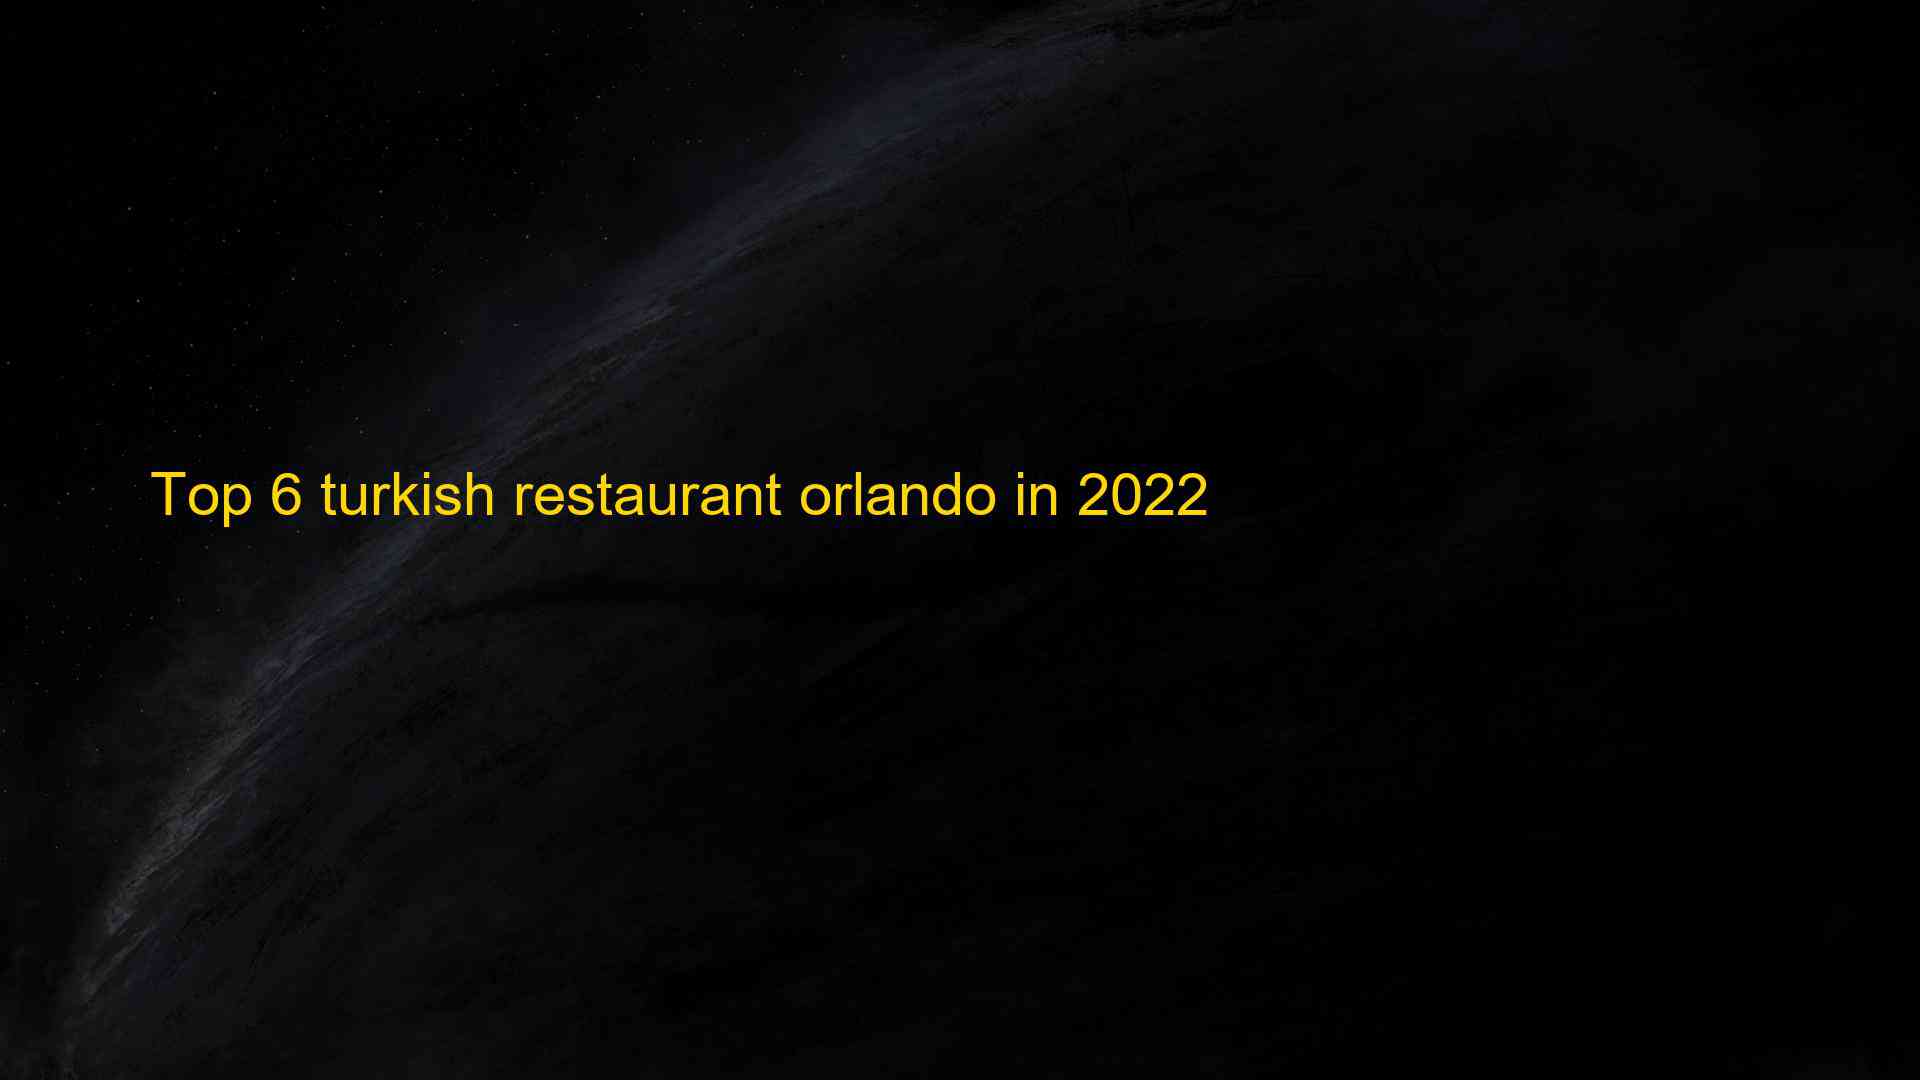 Top 6 turkish restaurant orlando in 2022 1663182730